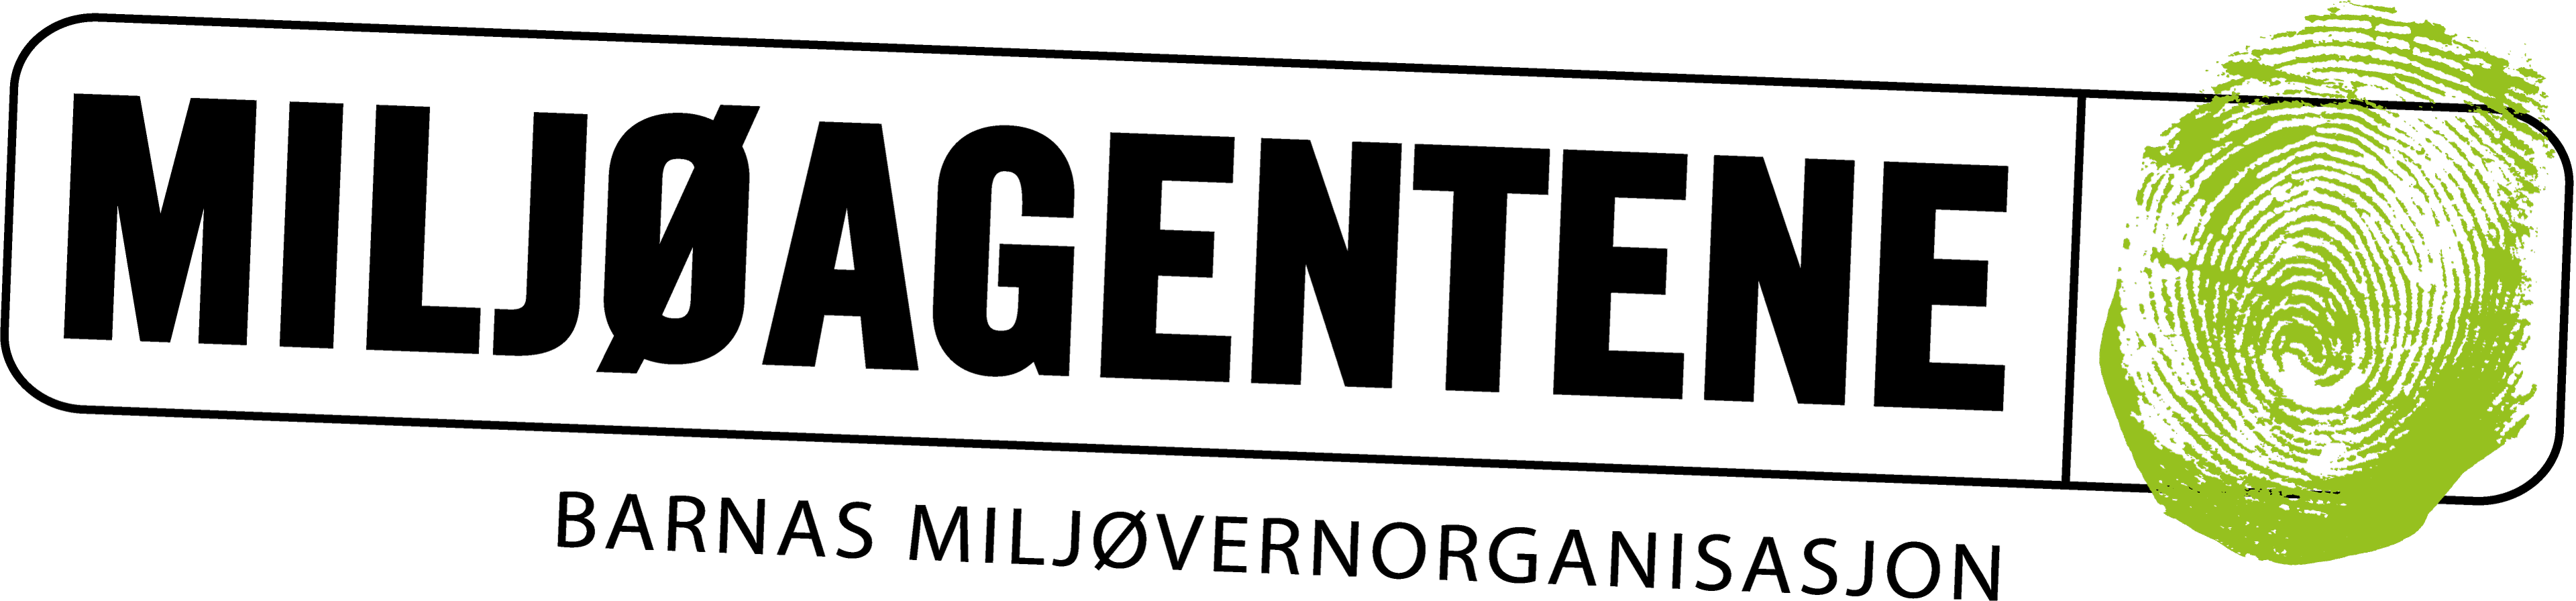 Strømmes logo